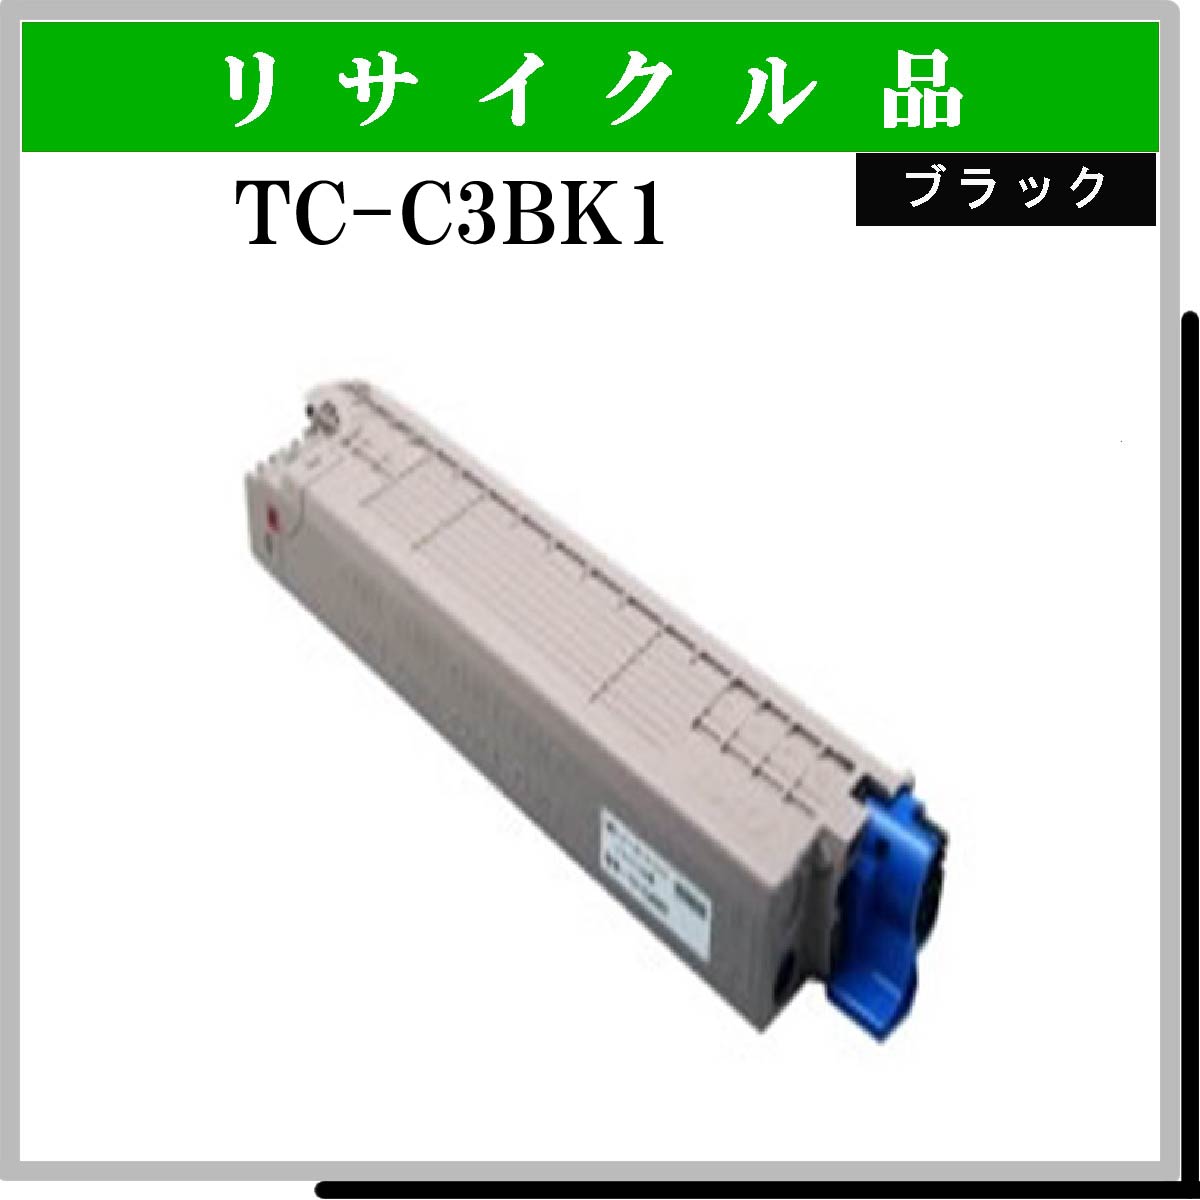 TC-C3BK1